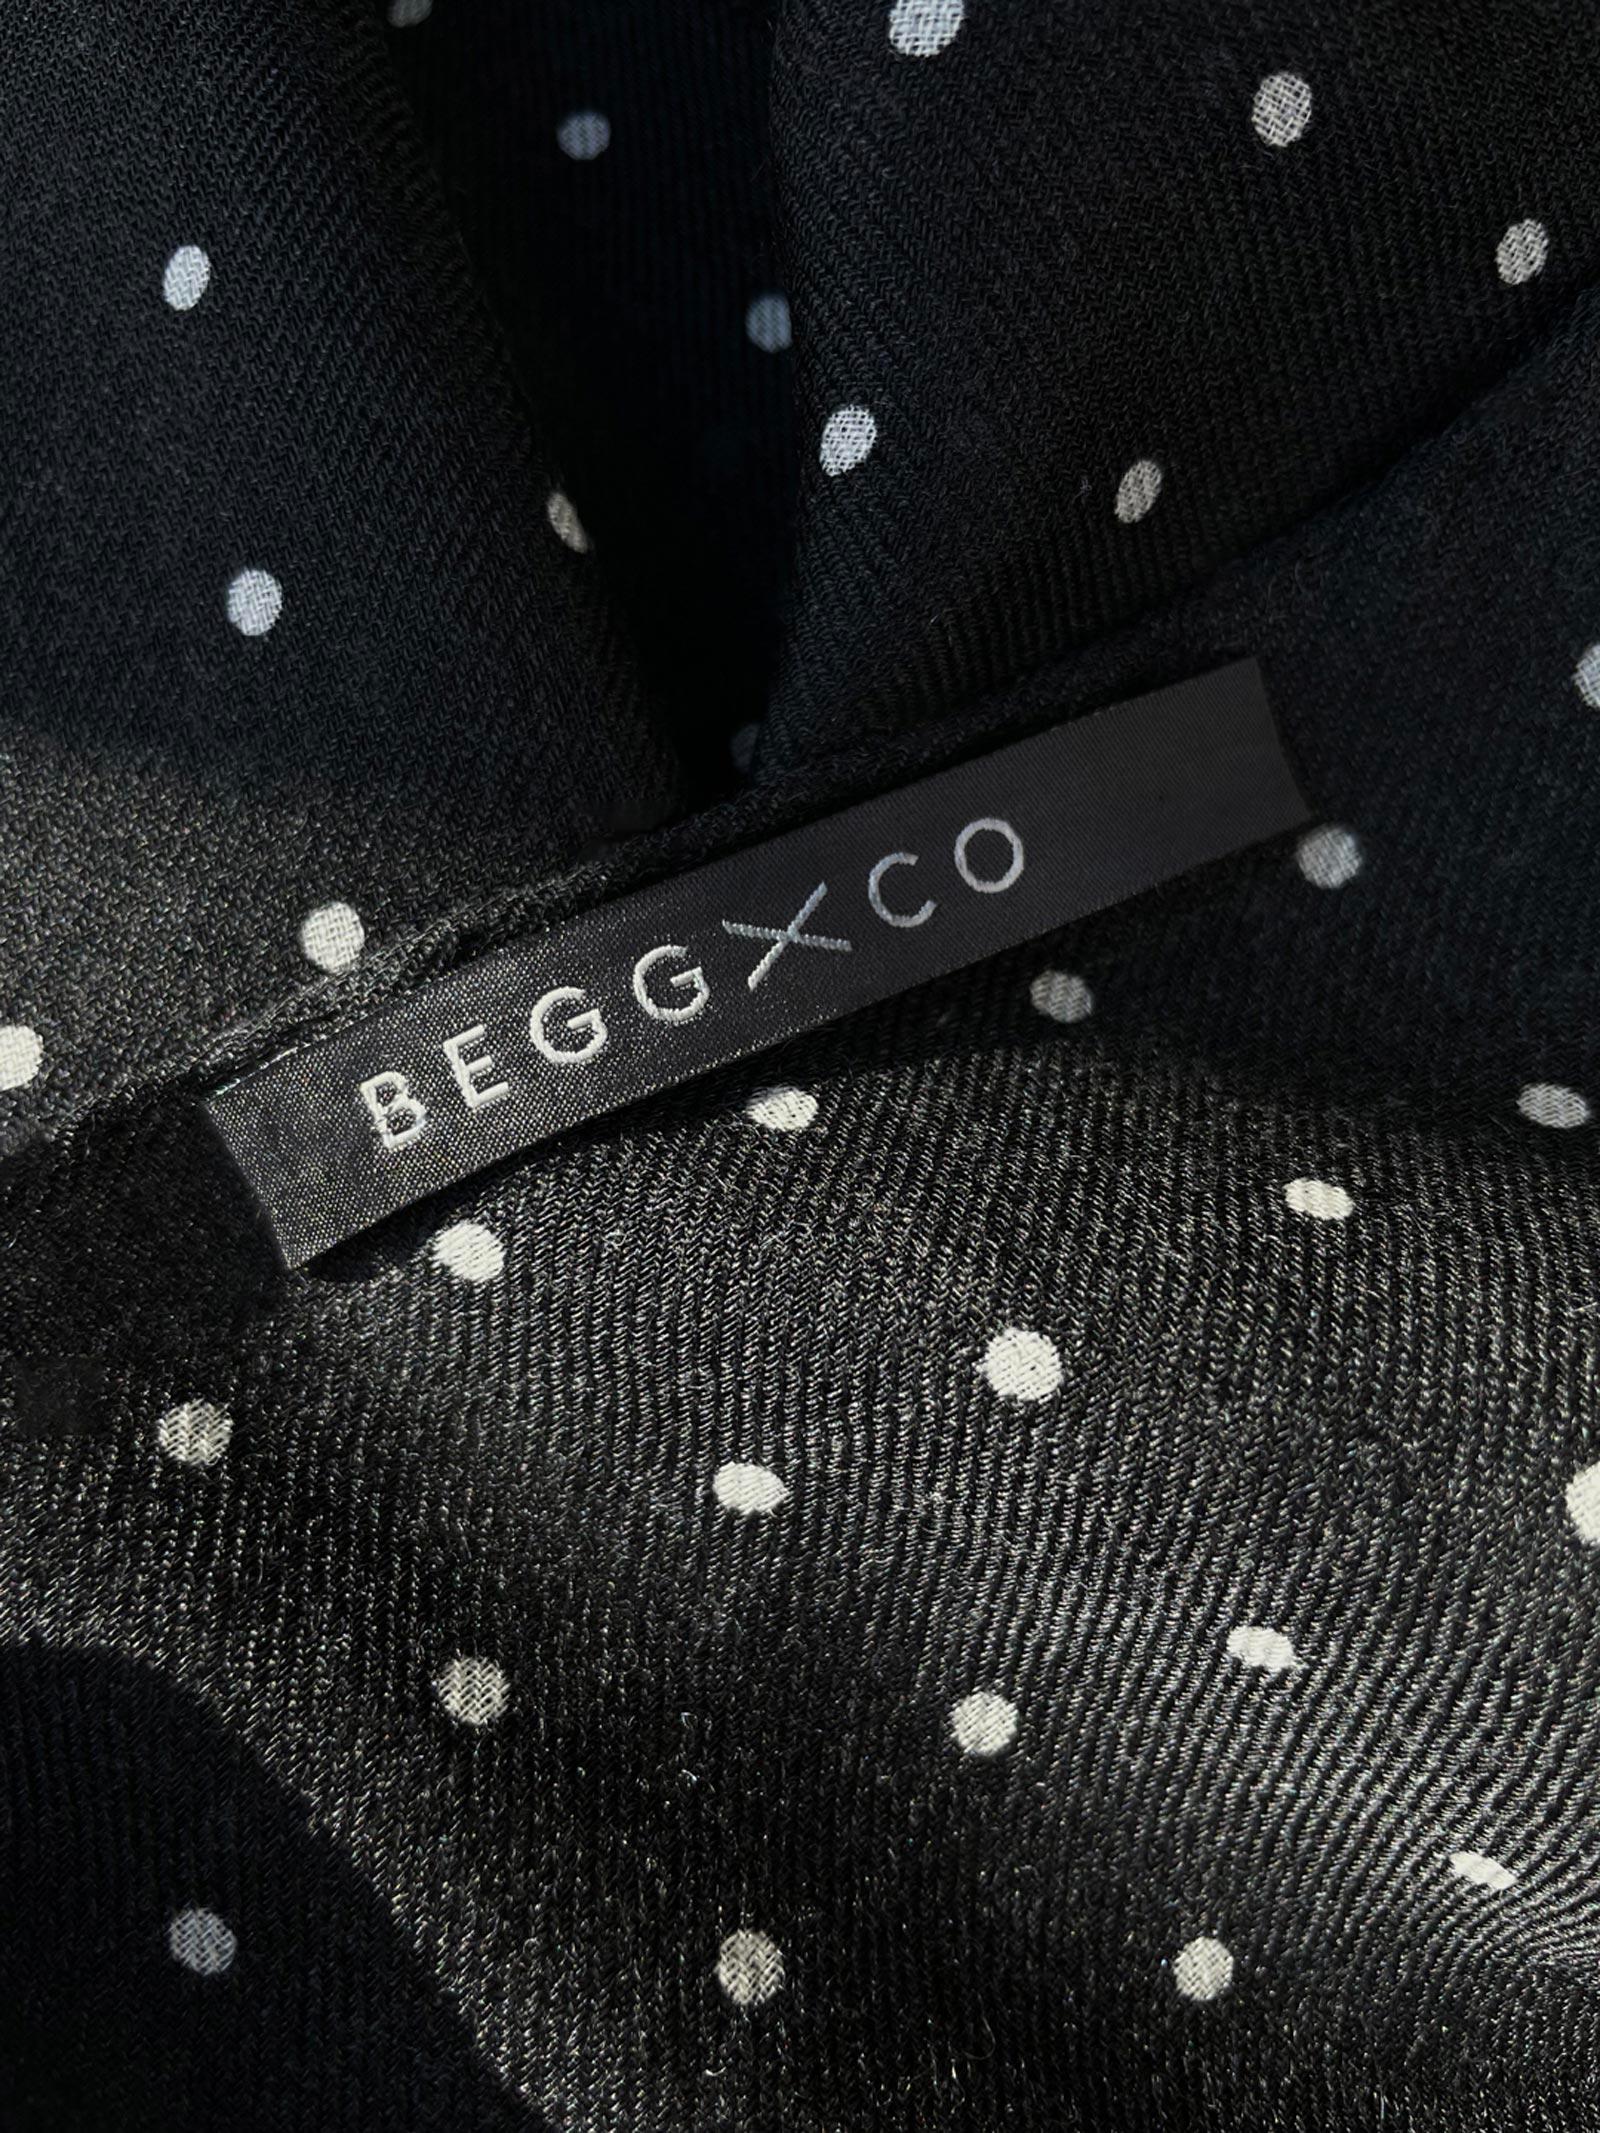 LWCO—Begg–Packaging02